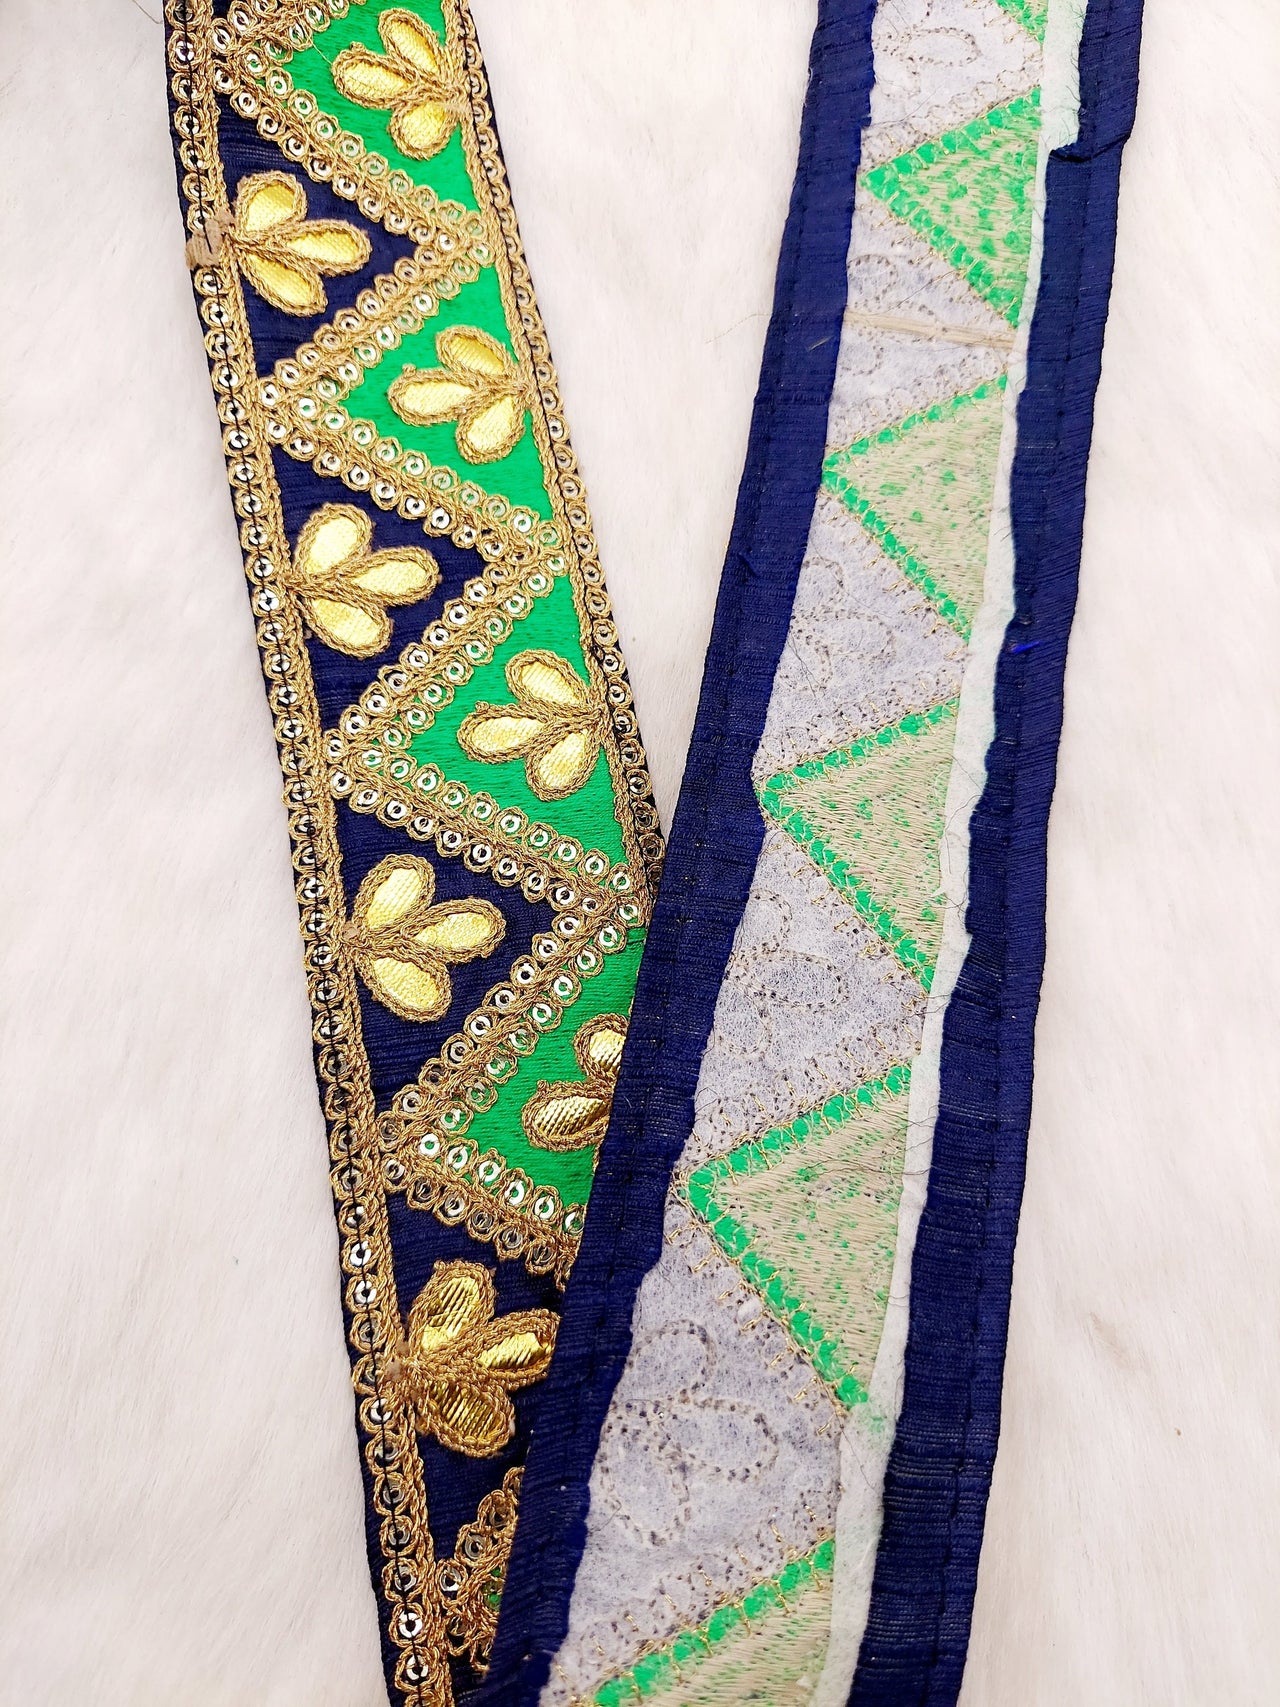 Silk Fabric Trim, Gold Gota Patti Indian Sari Border Trim By Yard Decorative Trim Craft Lace, Two Colour Trim